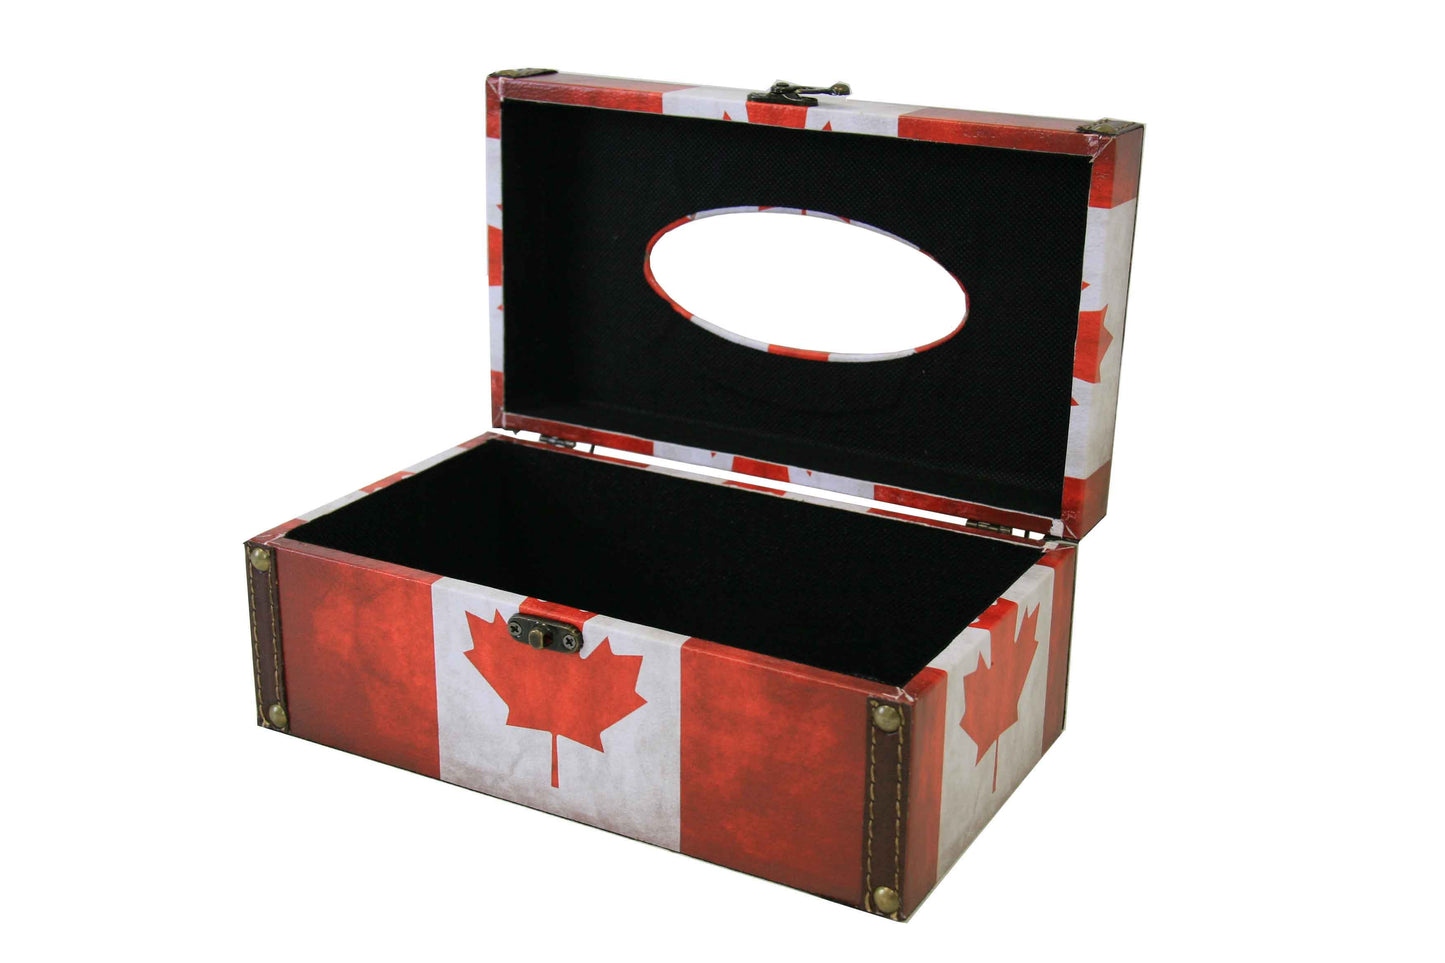 S16-164 - CANADA TISSUE BOX COVER